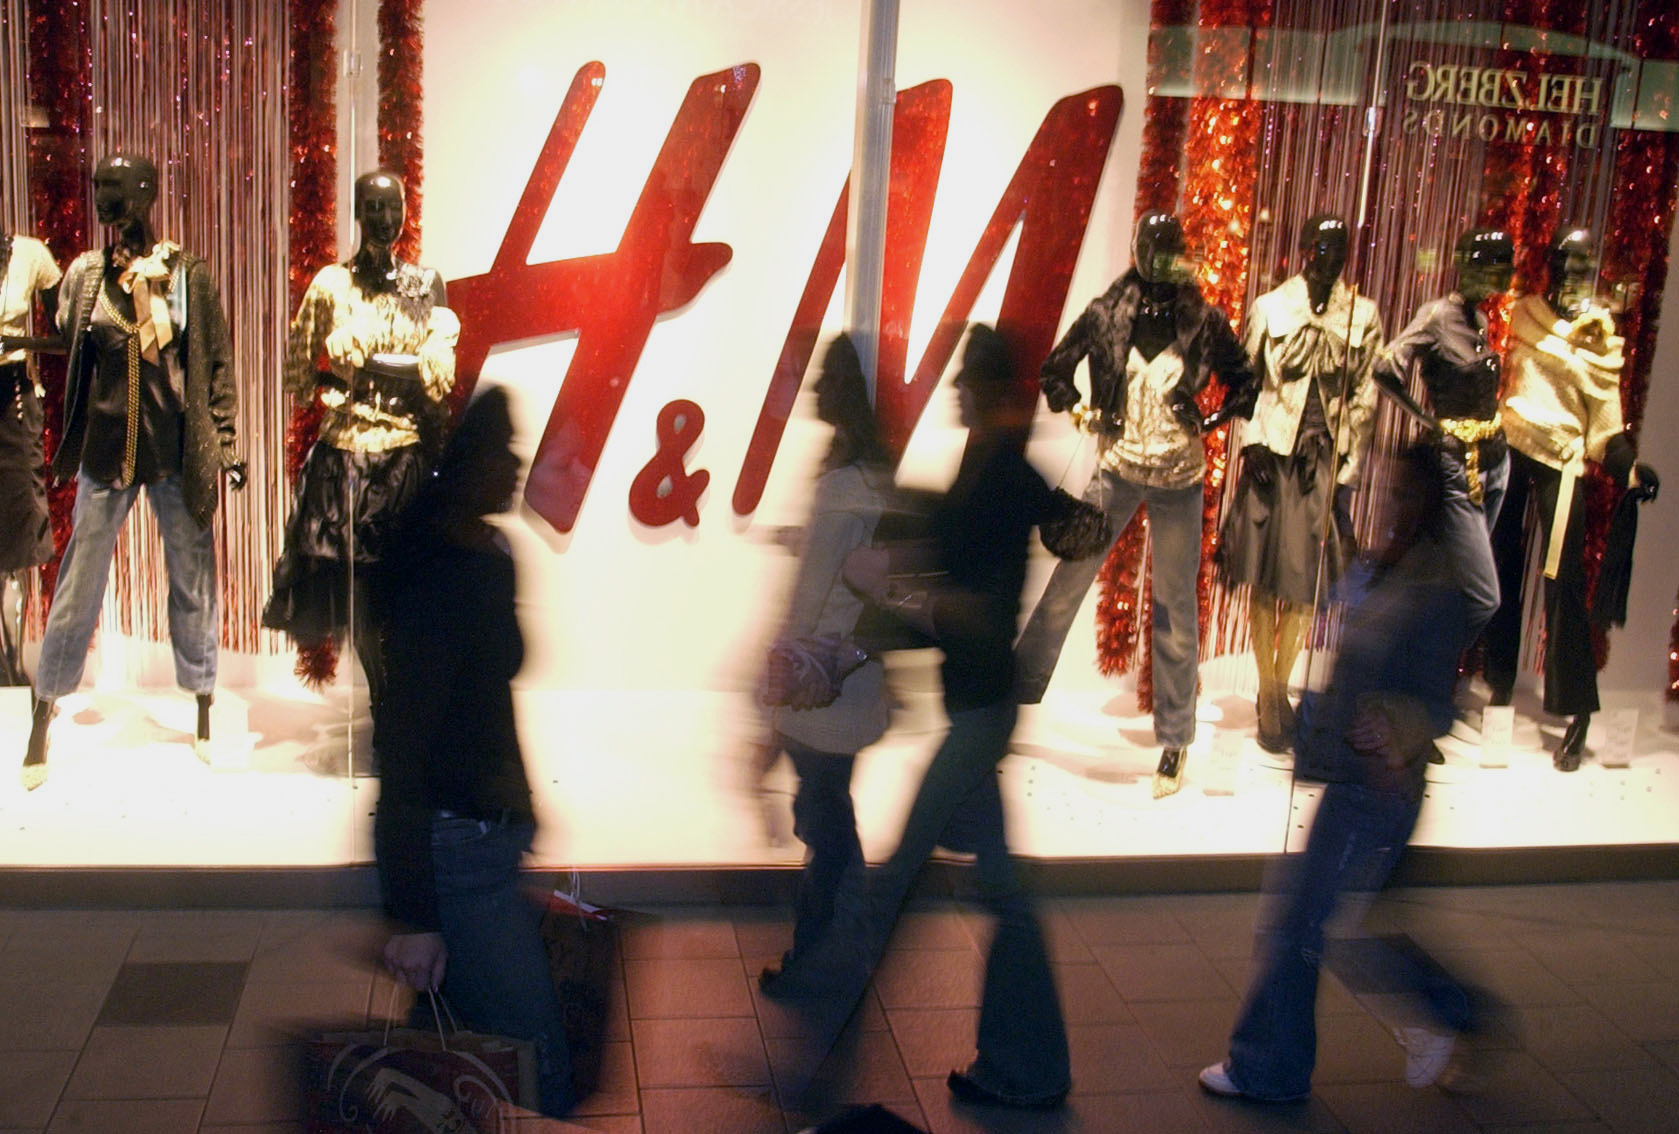 El negocio de la moda: H&M, “entre tendencias, largo plazo y precios bajos”